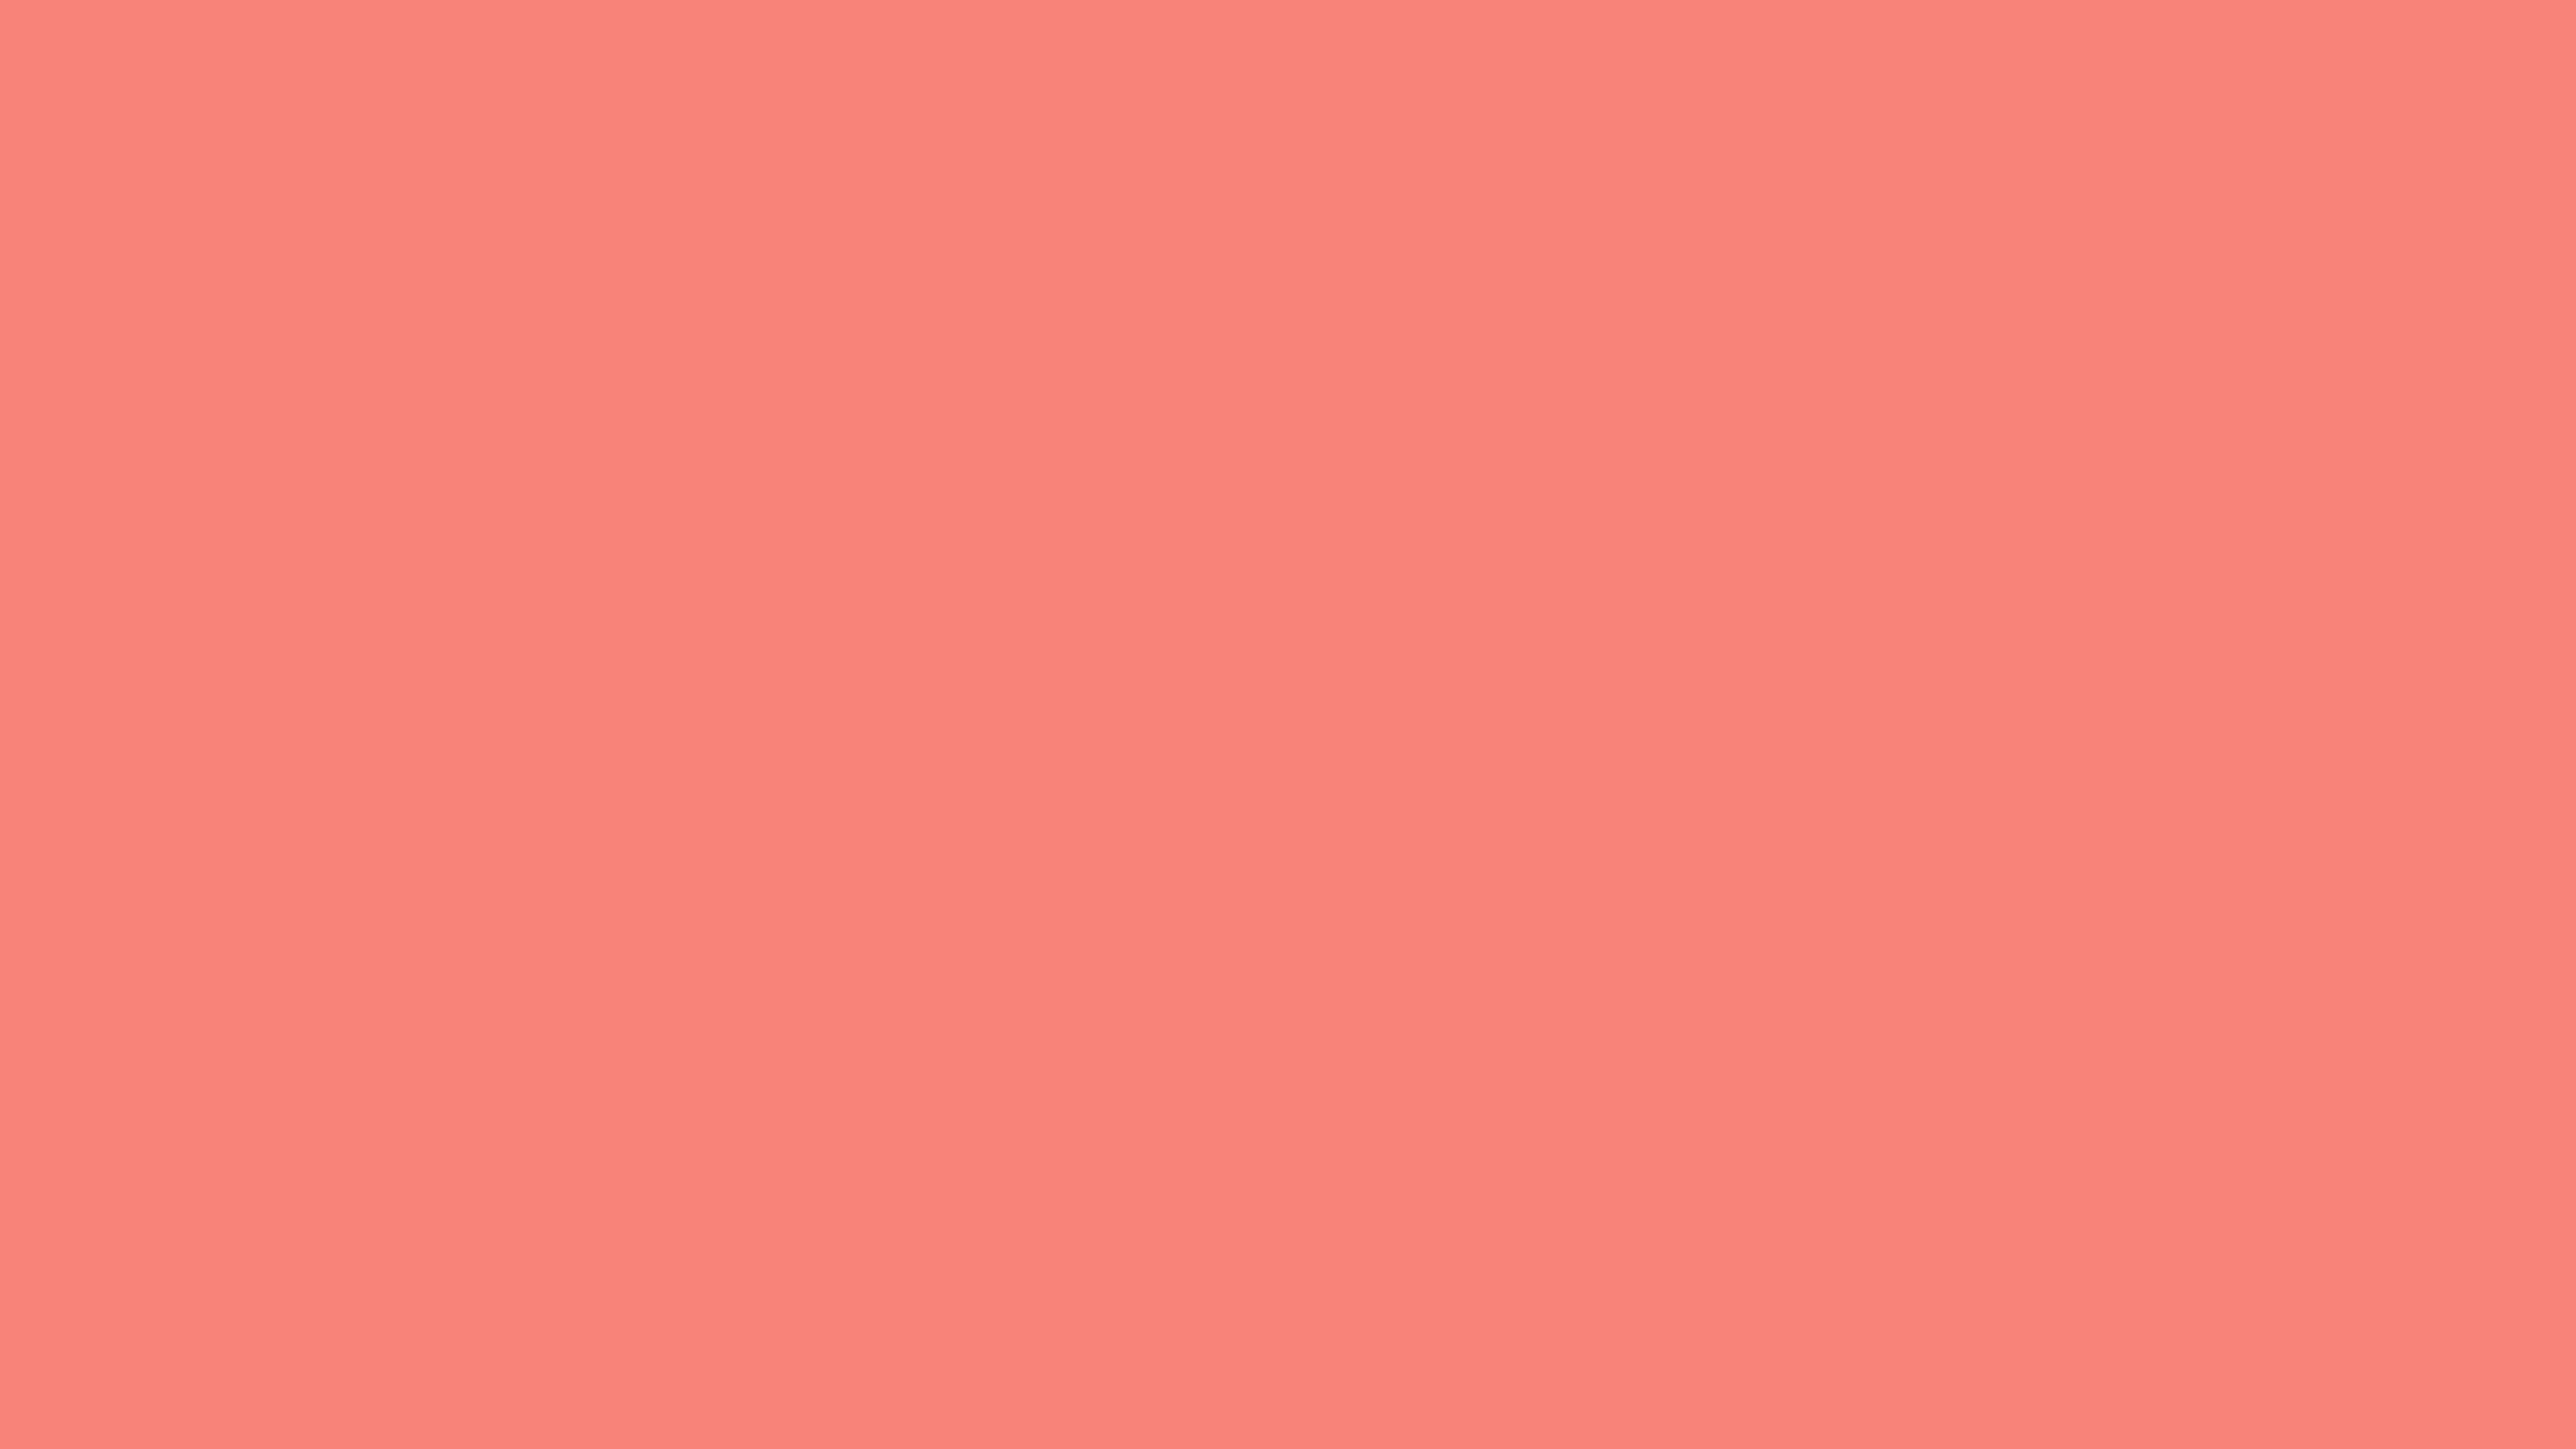 7680x4320 Tea Rose Orange Solid Color Background